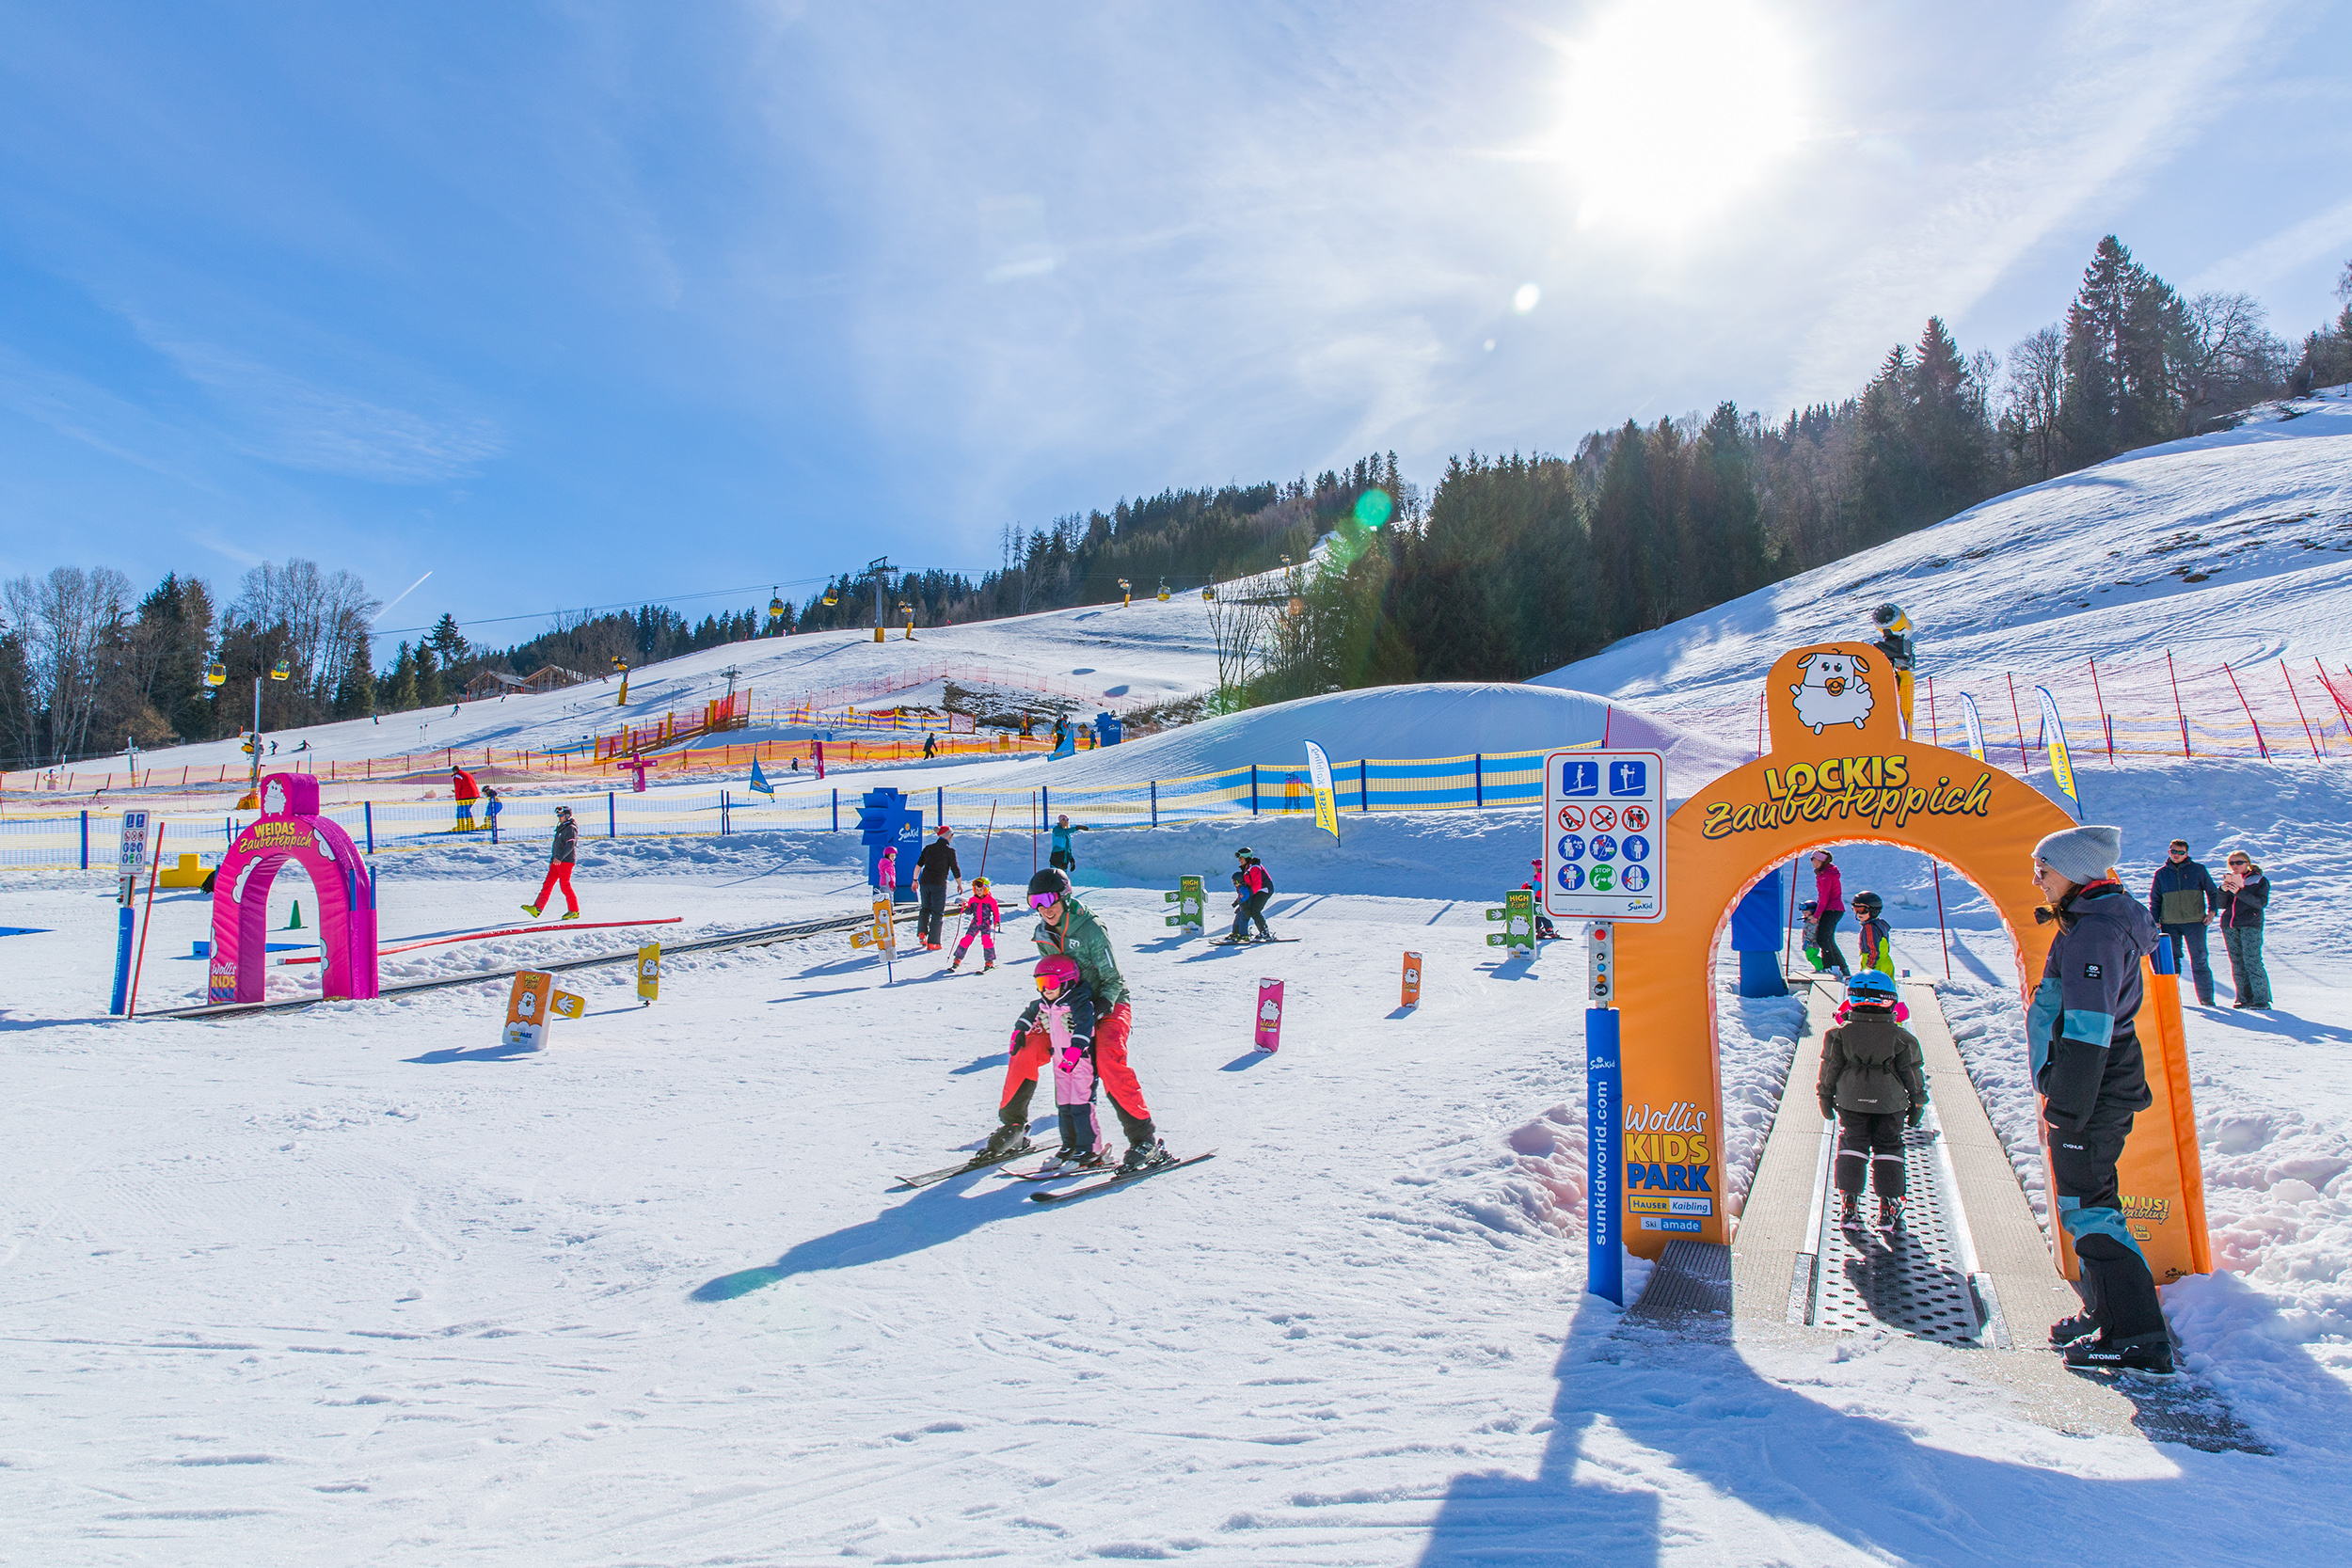 Gratis Skivergnügen für Kids und Jugendliche